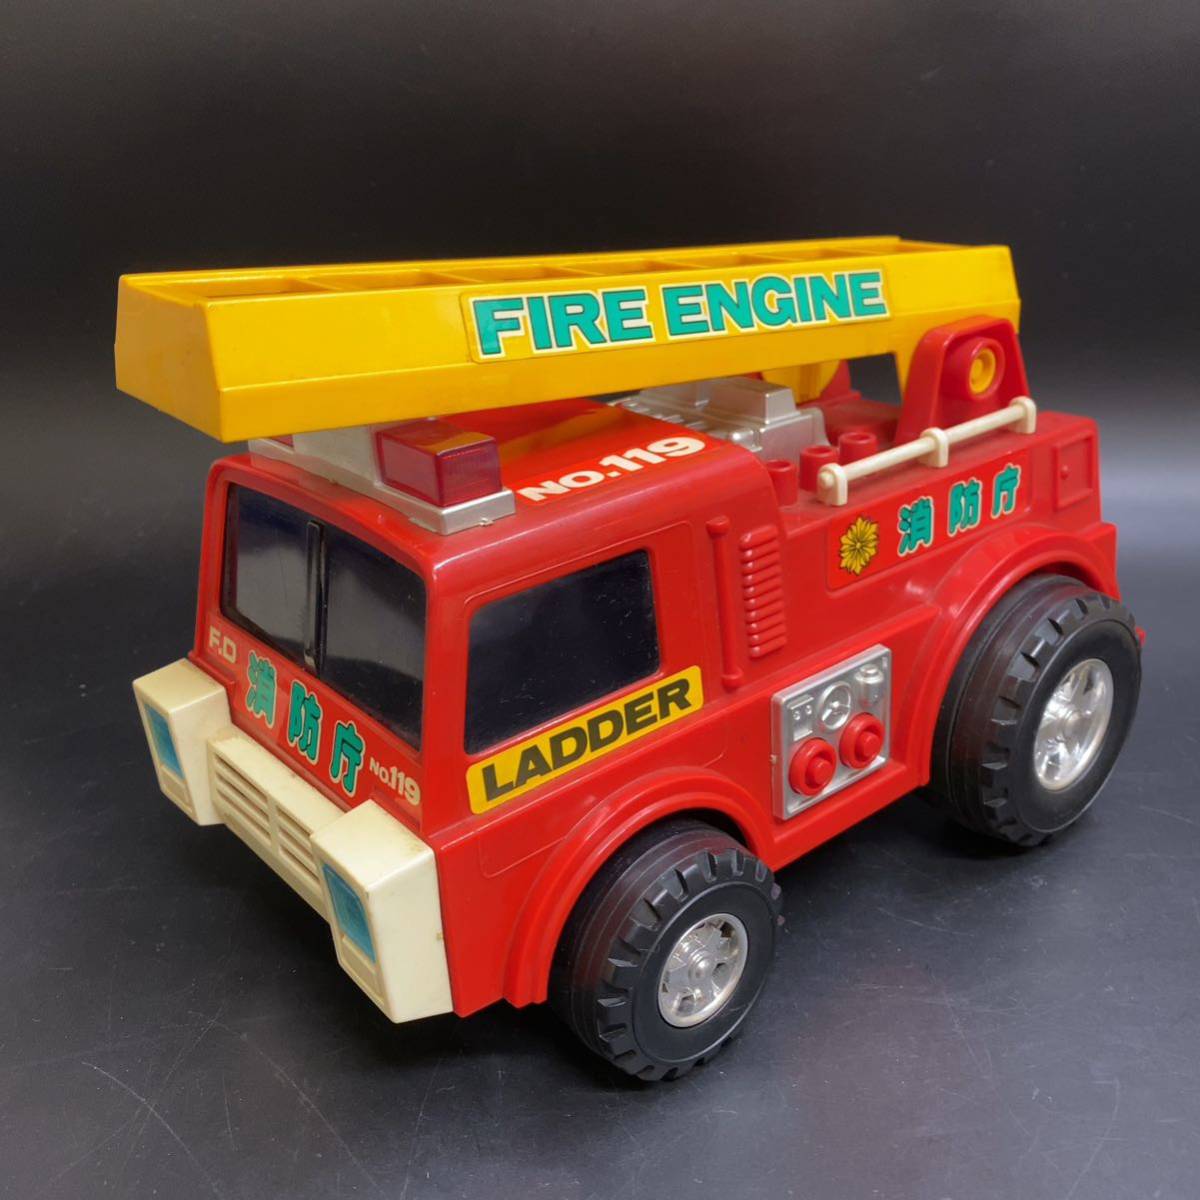 米澤玩具 ヨネザワ 消防車 ビックマシン 消防庁 LADDER FIRE ENGINE No.119日本製 当時物 昭和レトロ ハシゴ消防車の画像1